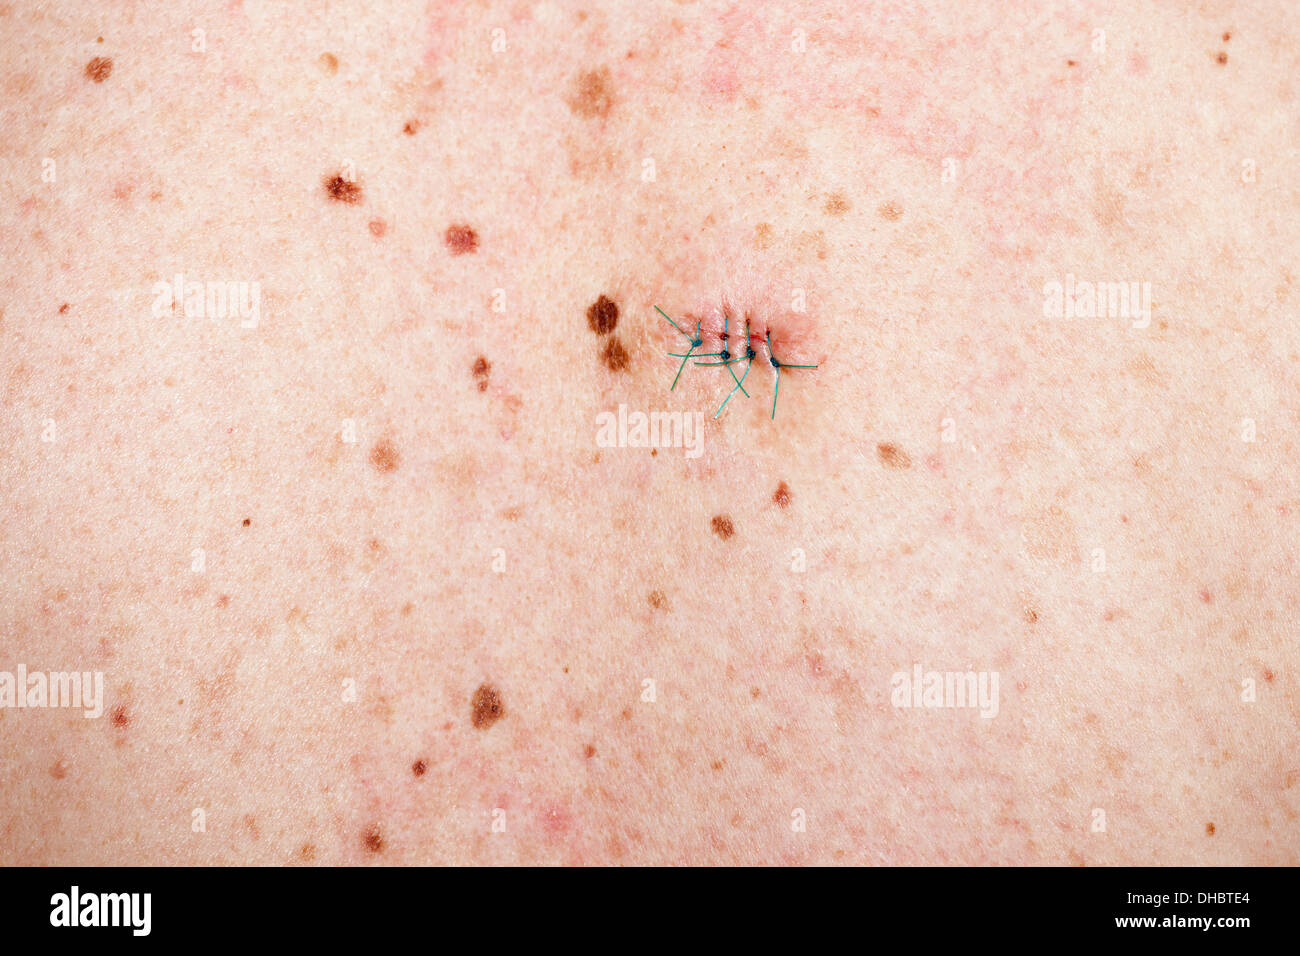 La pelle umana con cuciture - un sacco di moli, macchie e cicatrici da tagliare le verruche. Foto Stock